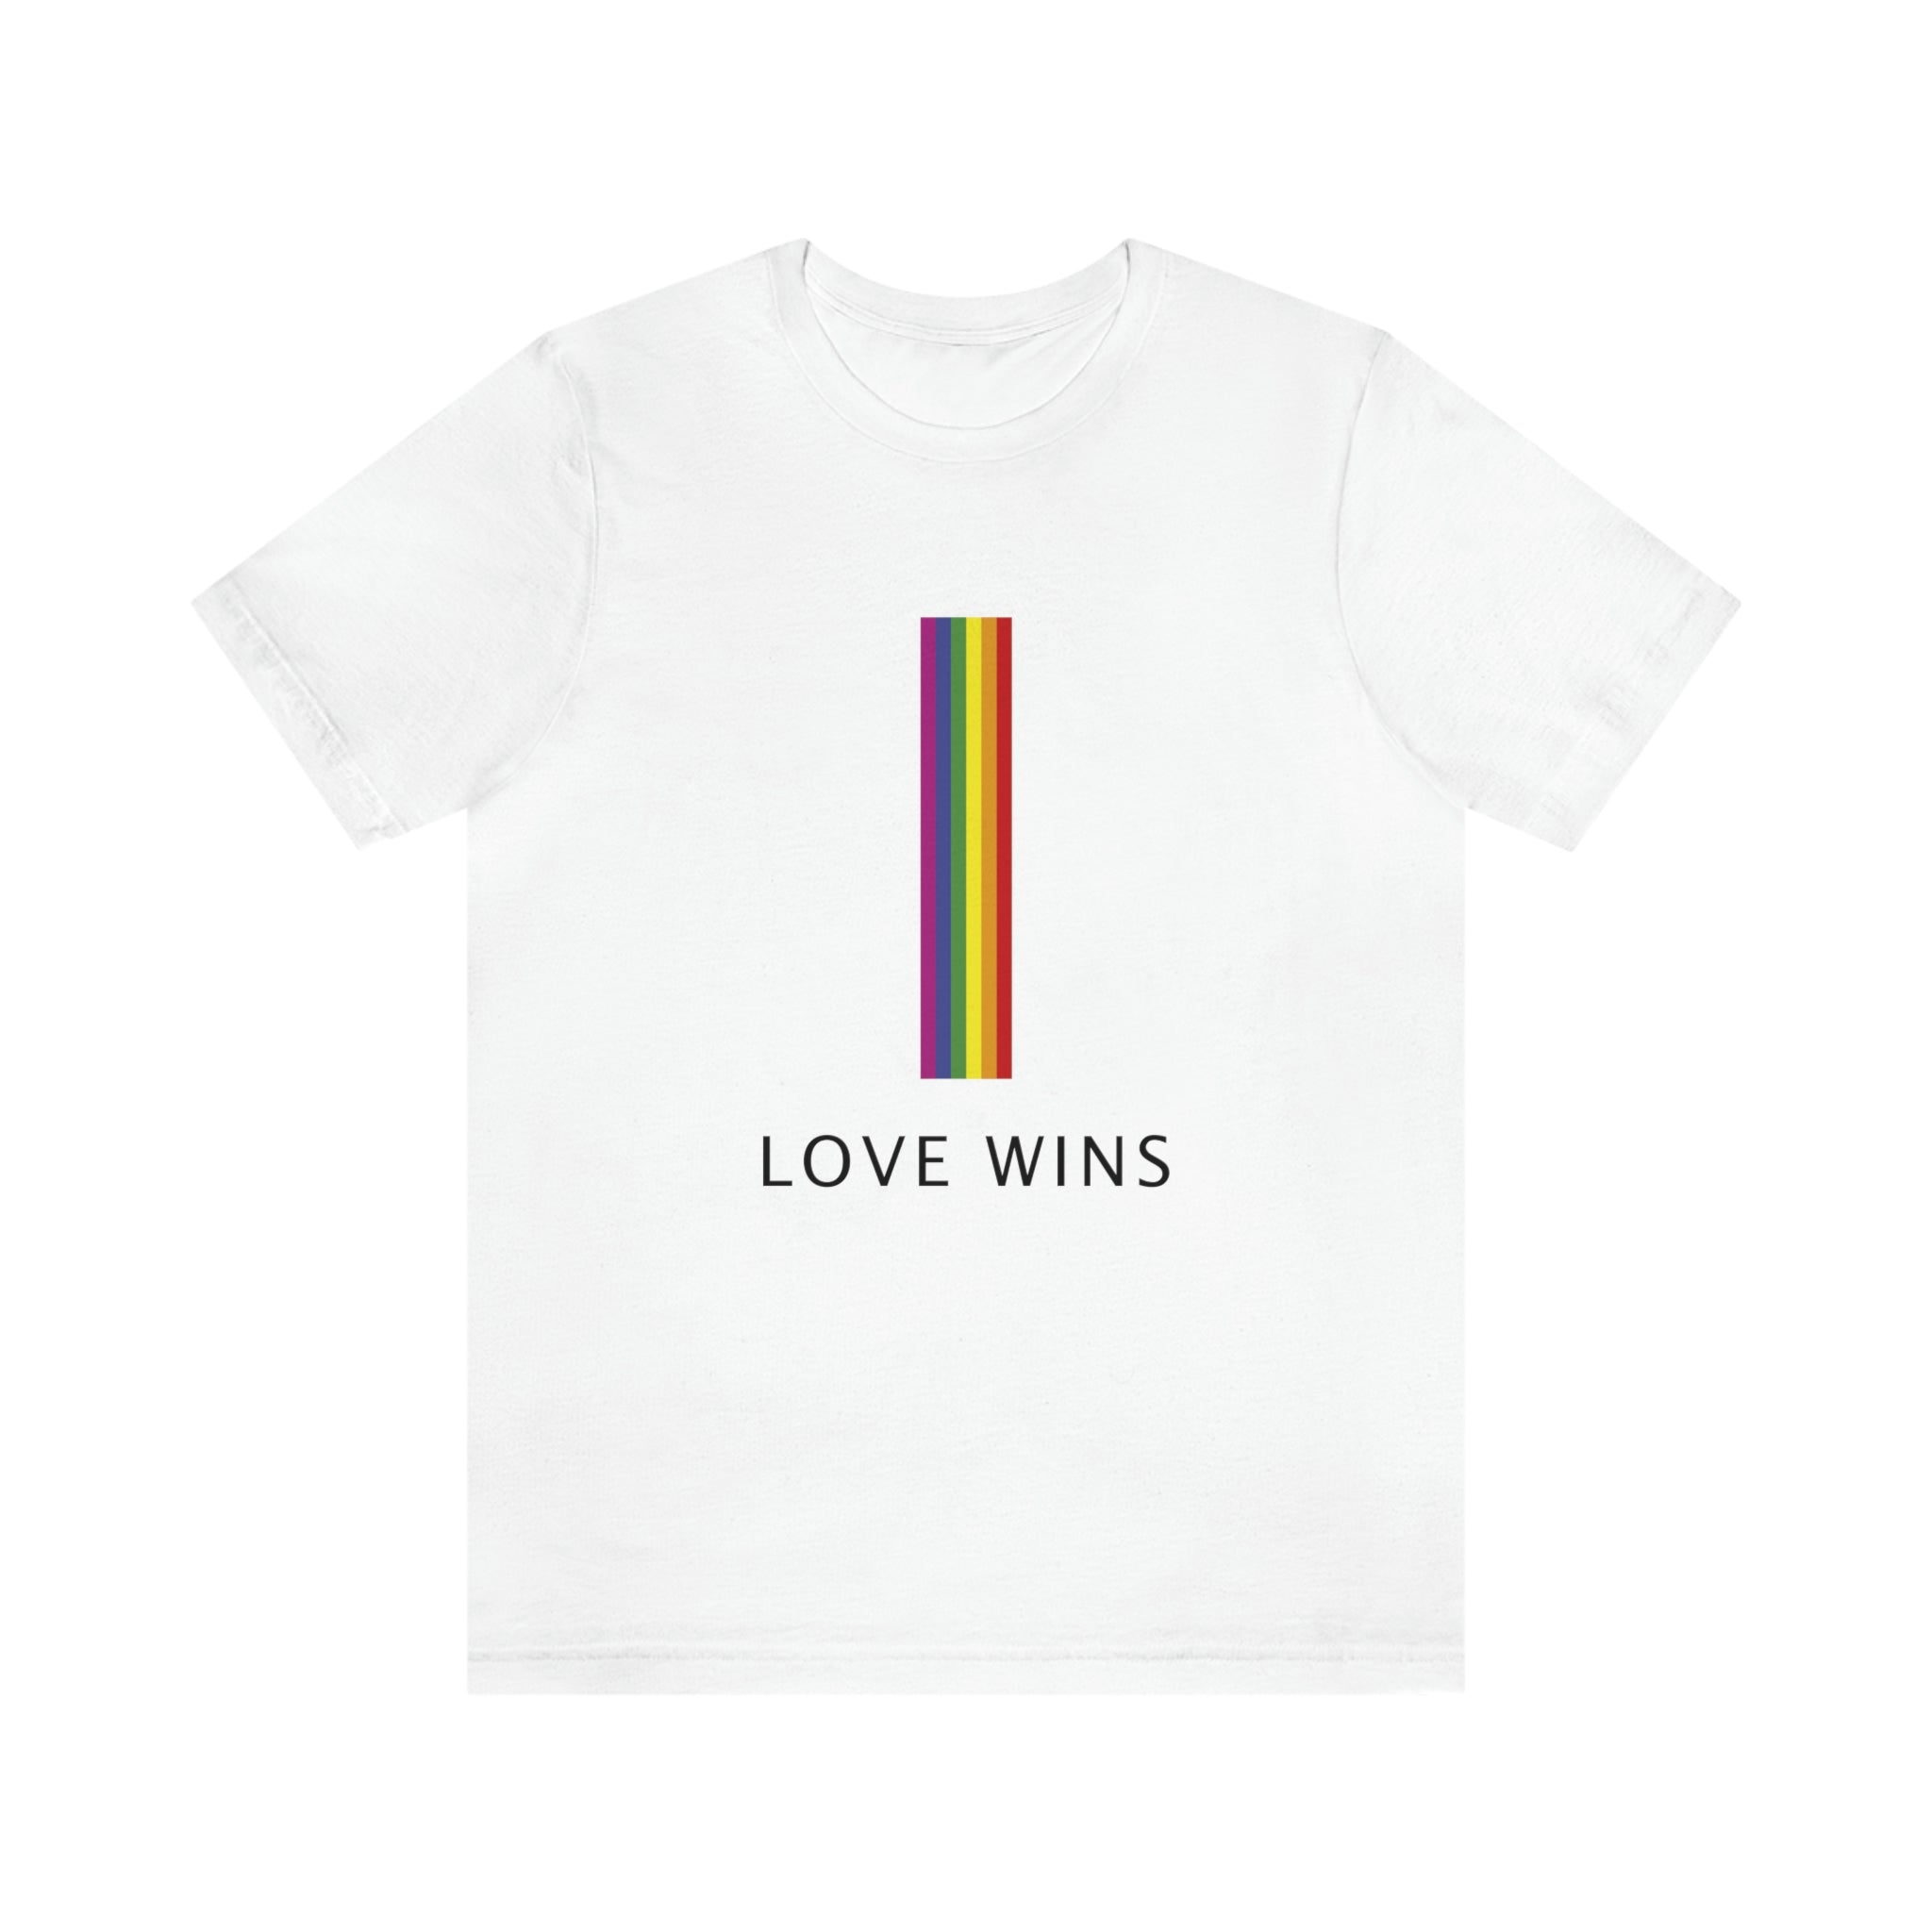 Love Wins! : Unisex 100% Cotton T-Shirt